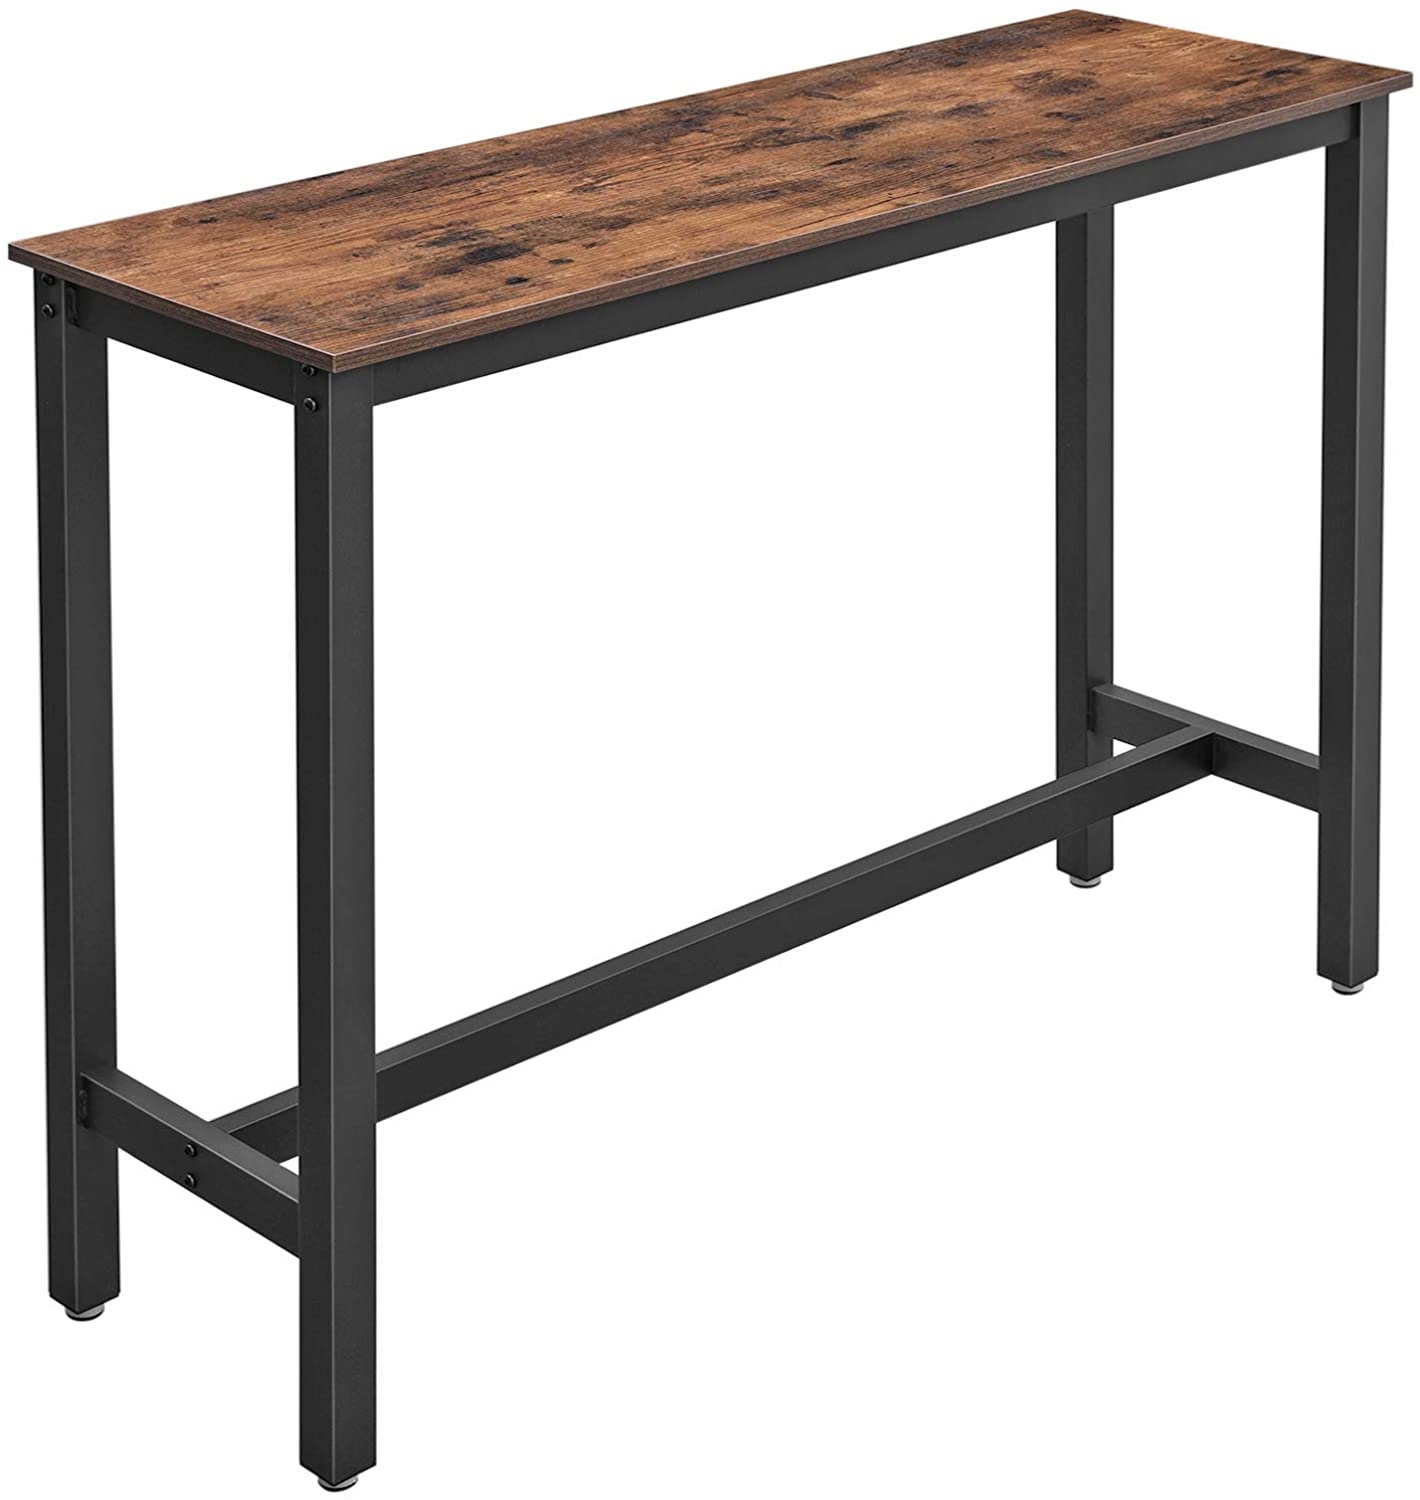 VASAGLE bárasztal, keskeny téglalap alakú bárasztal, konyhai asztal, kocsmai étkező magas asztal 120 x 40 x 100 cm